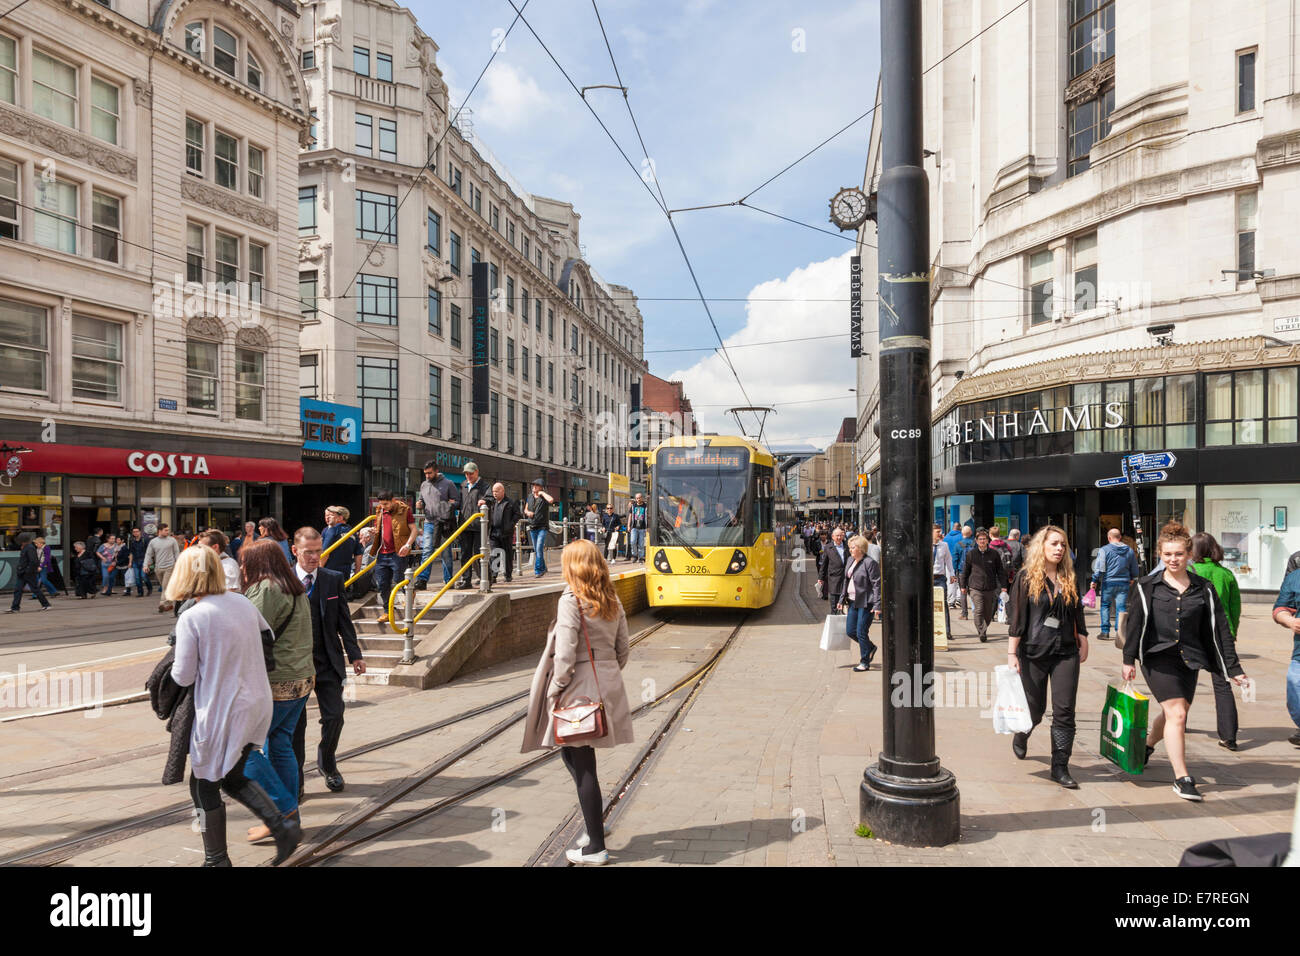 Les gens shopping et tramway Metrolink sur l'animée rue du marché dans le centre-ville de Manchester, Angleterre, RU Banque D'Images